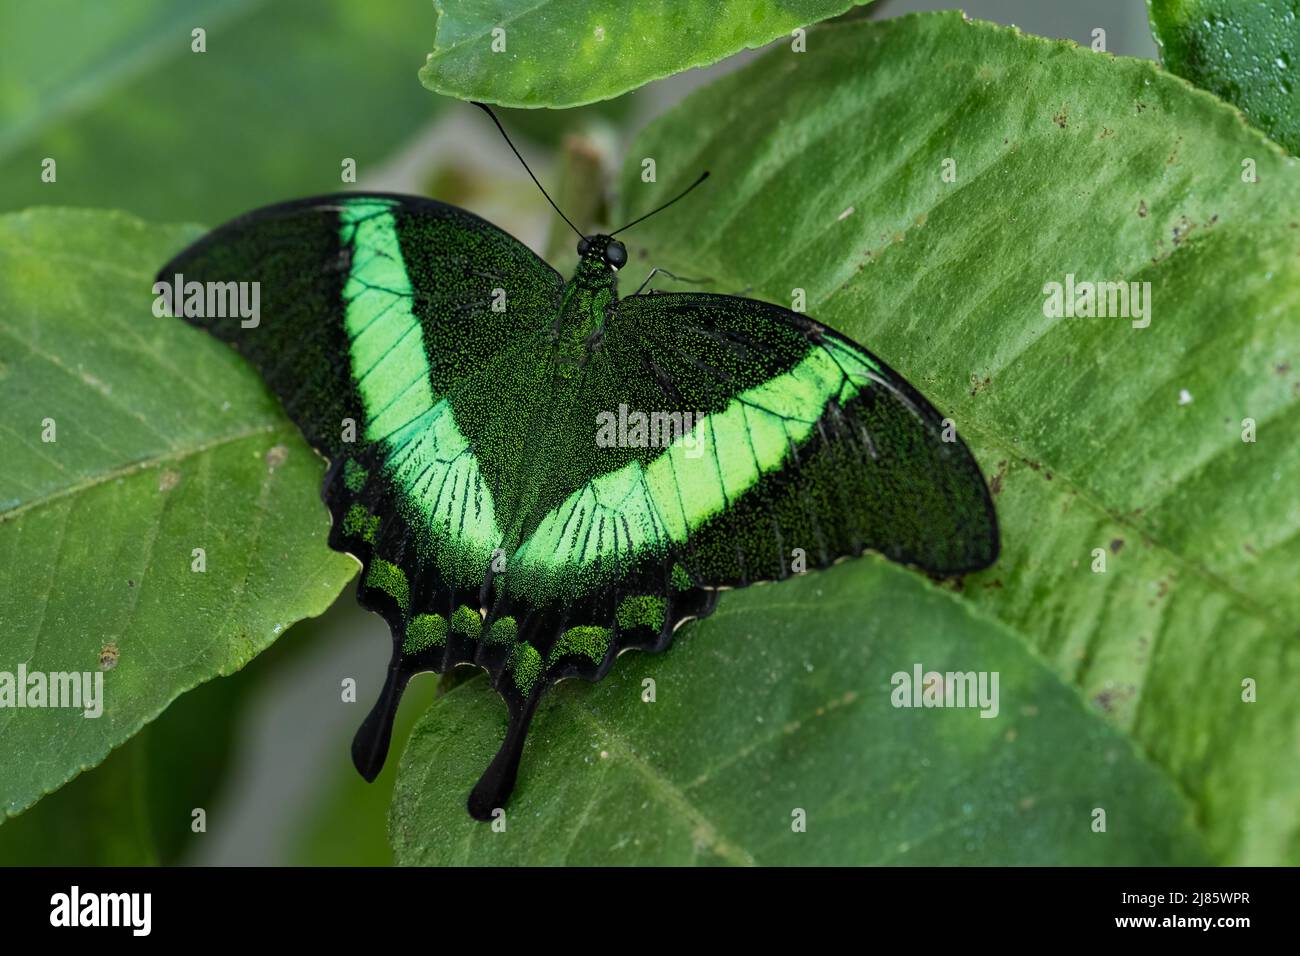 Emerald Swallowtail - Papilio palinurus, hermosa mariposa verde y negra de los bosques de Malasia. Foto de stock